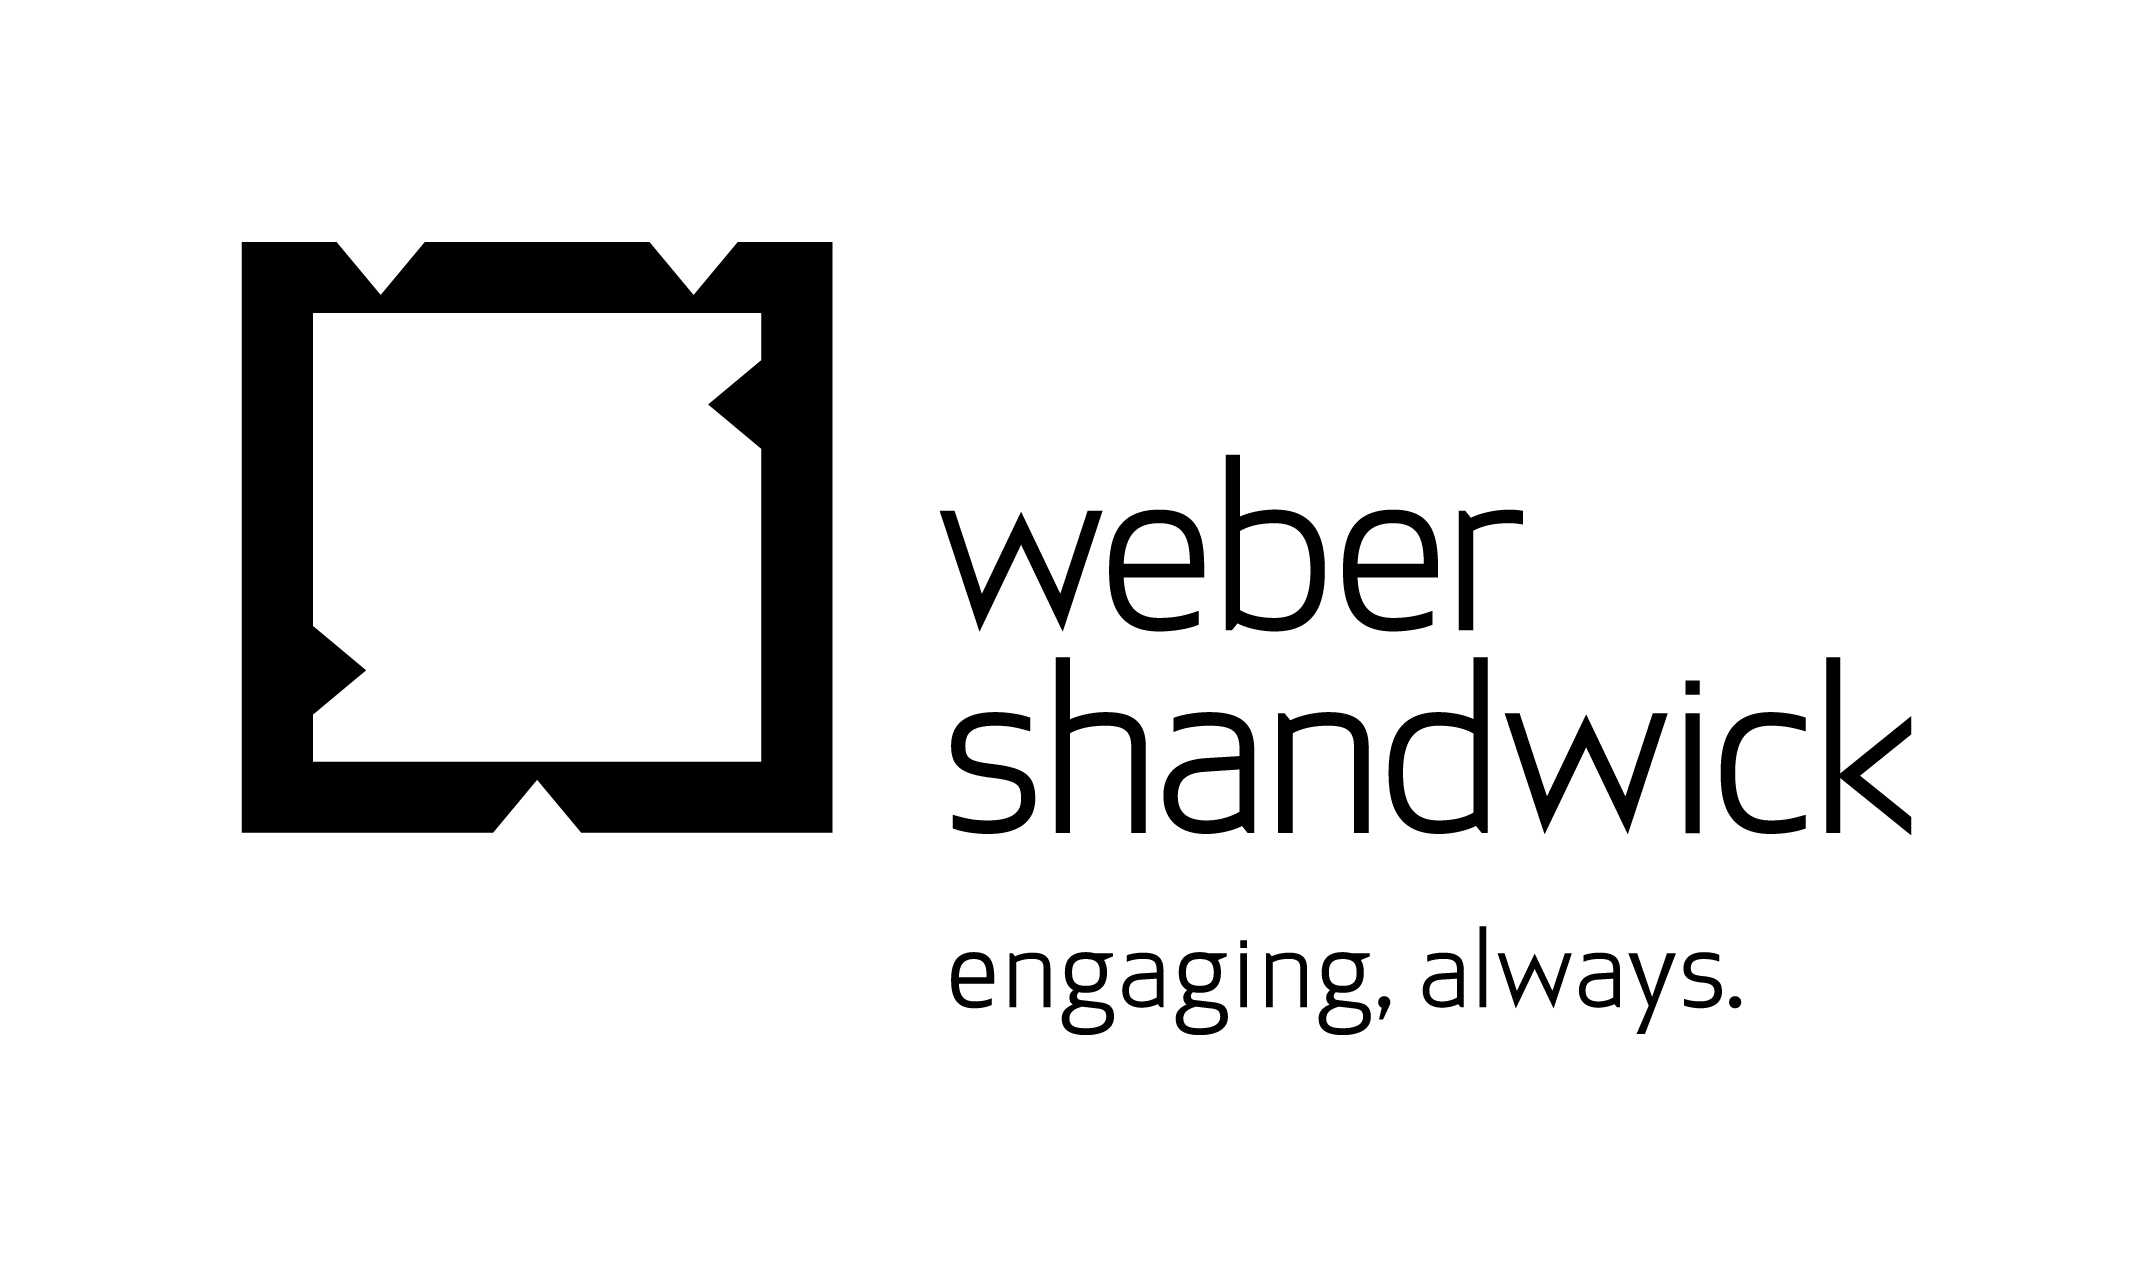  Best Online Public Relations Agency Logo: Weber Shandwick